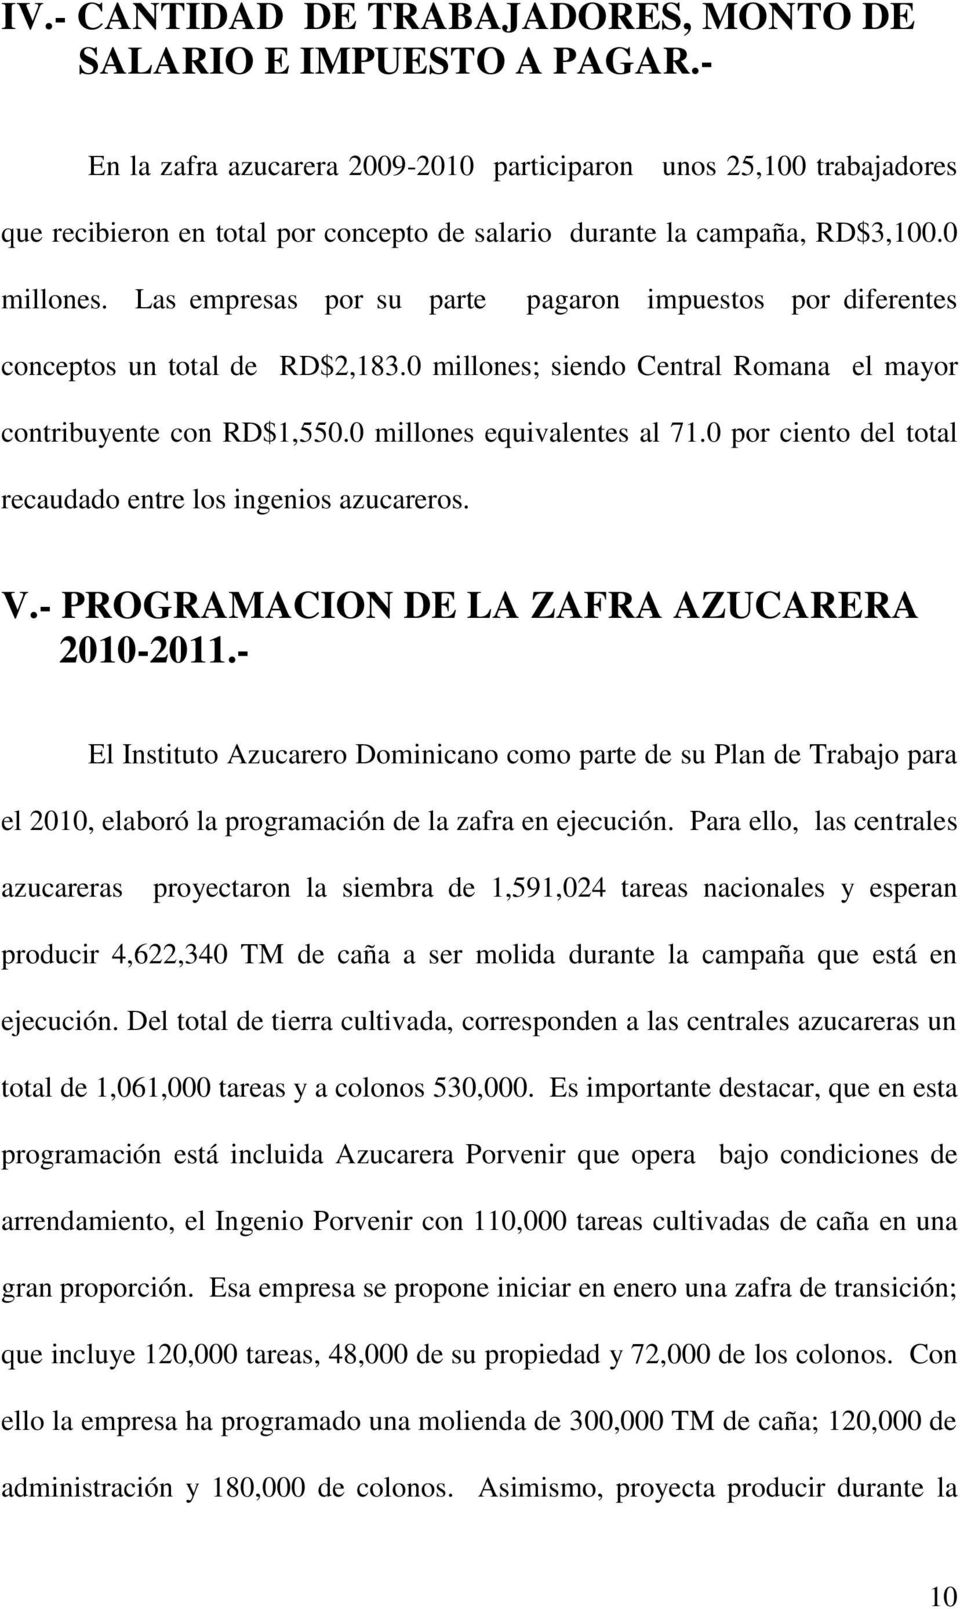 Las empresas por su parte pagaron impuestos por diferentes conceptos un total de RD$2,183.0 millones; siendo Central Romana el mayor contribuyente con RD$1,550.0 millones equivalentes al 71.